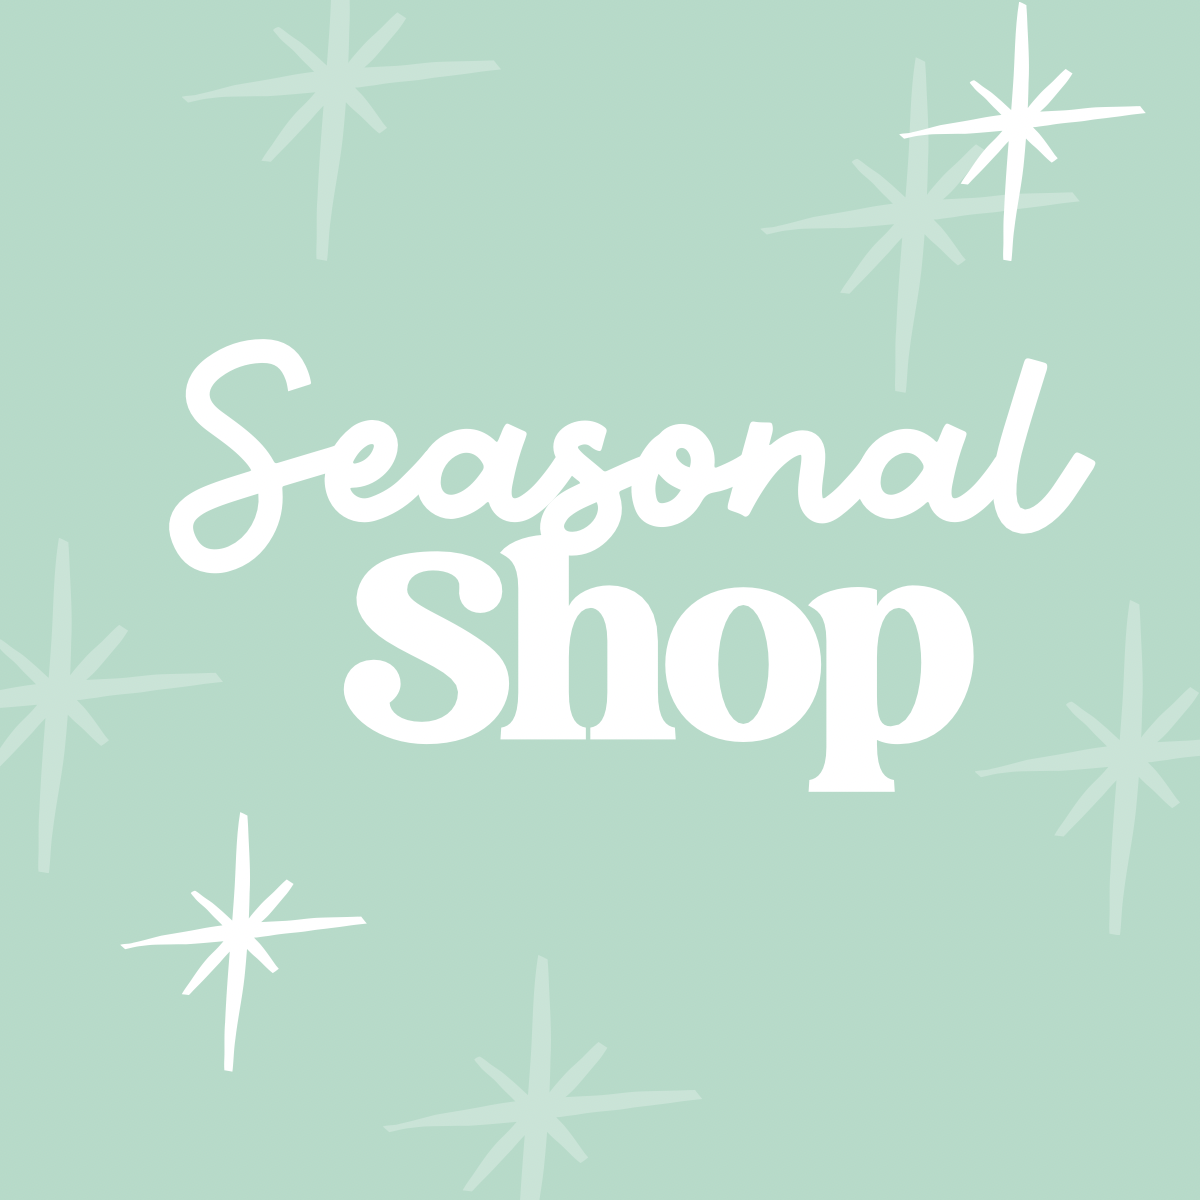 Seasonal Shop